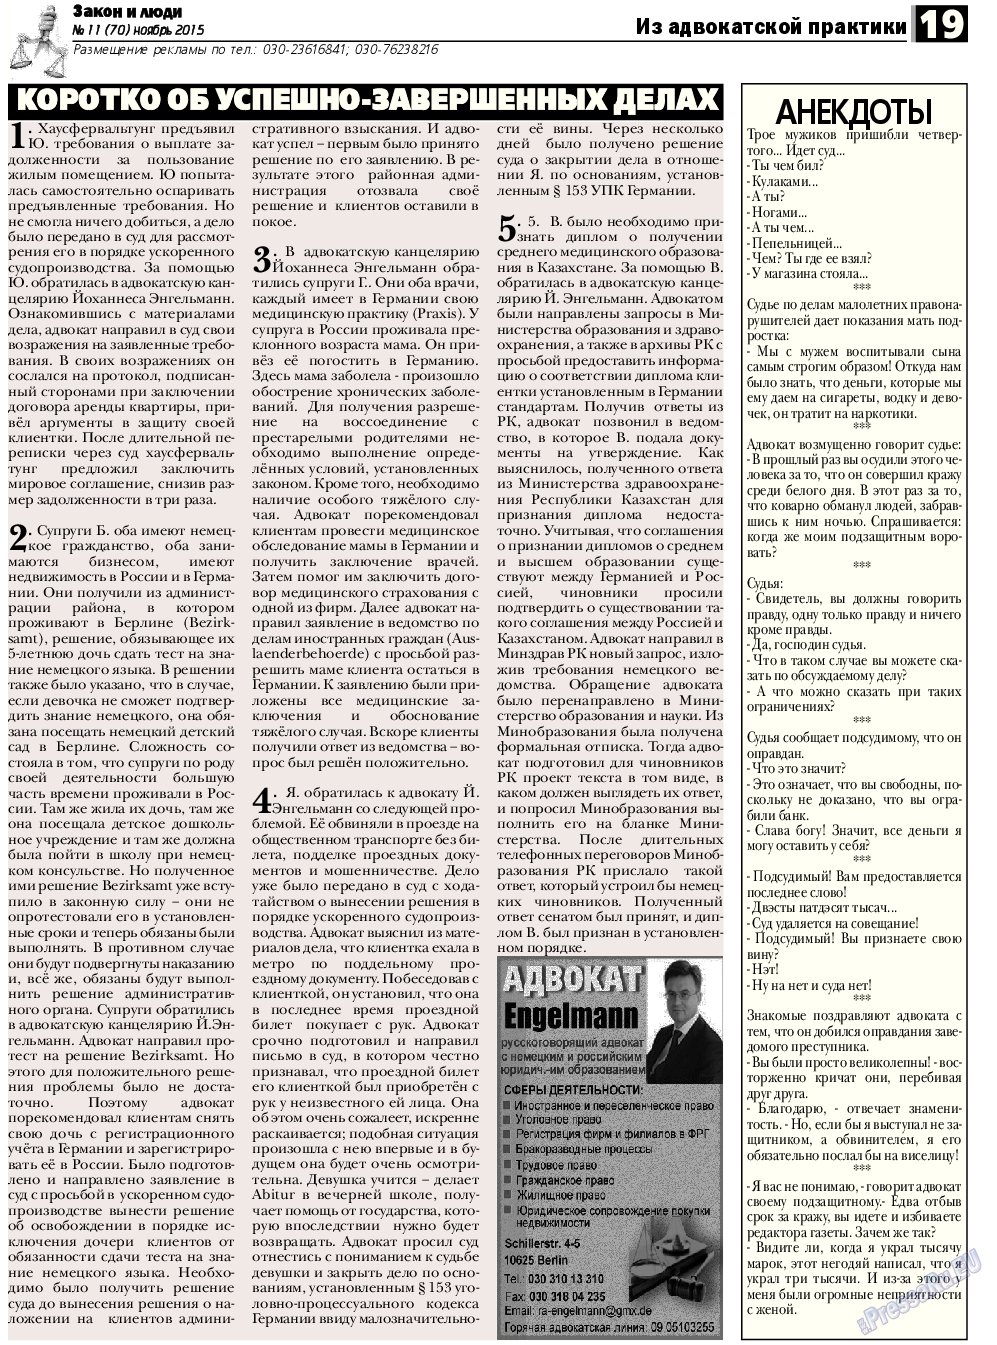 Закон и люди, газета. 2015 №11 стр.19